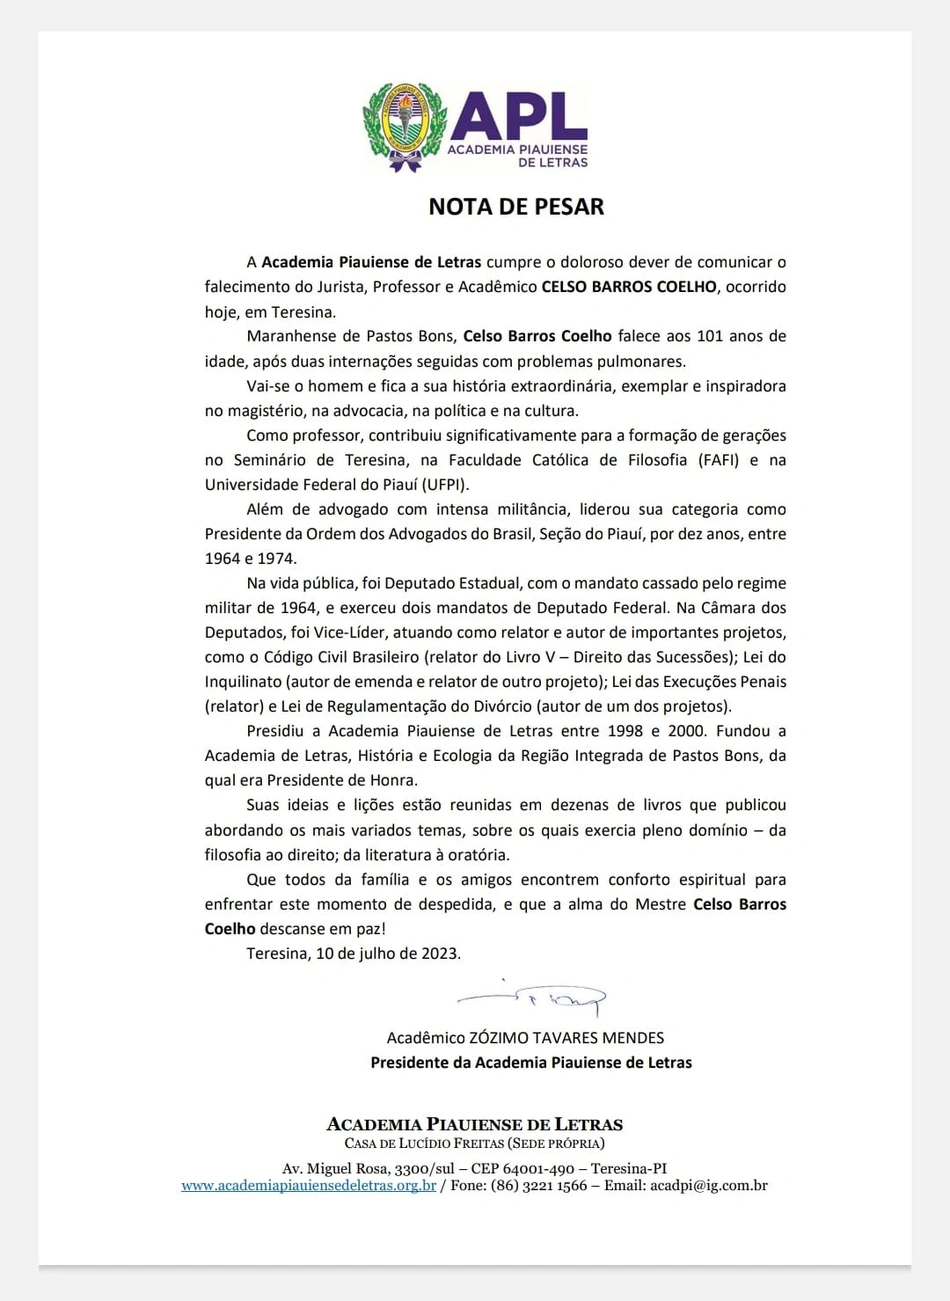 Nota de pesar da Academia Piauiense de Letras pelo falecimento de Celso Barros Coelho